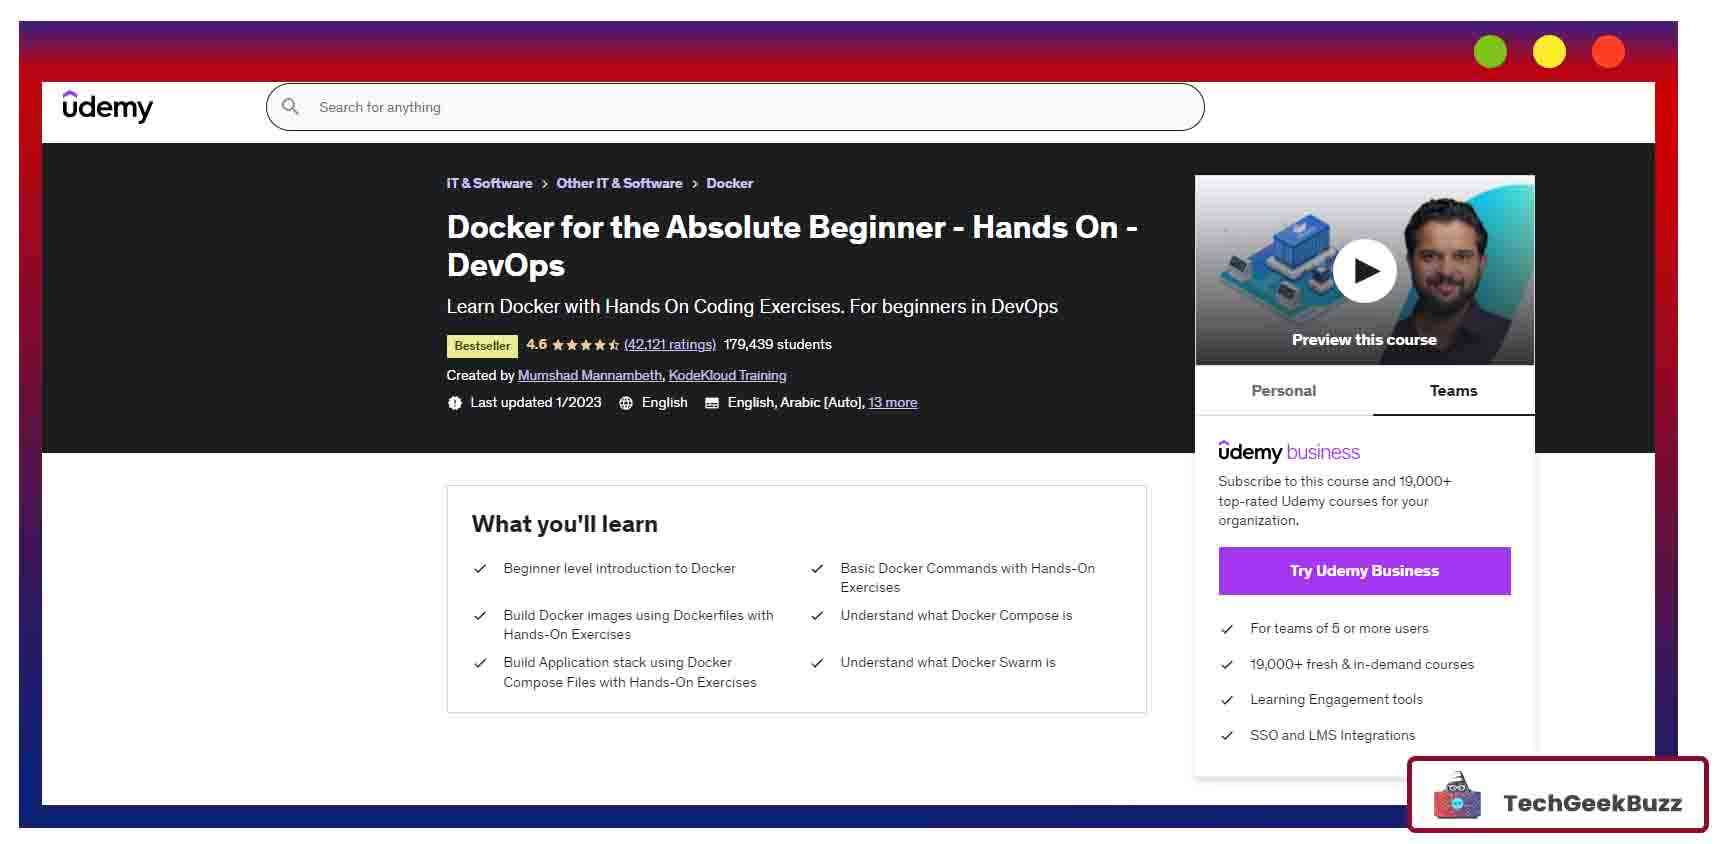 Docker for the Absolute Beginner - Hands On - DevOps